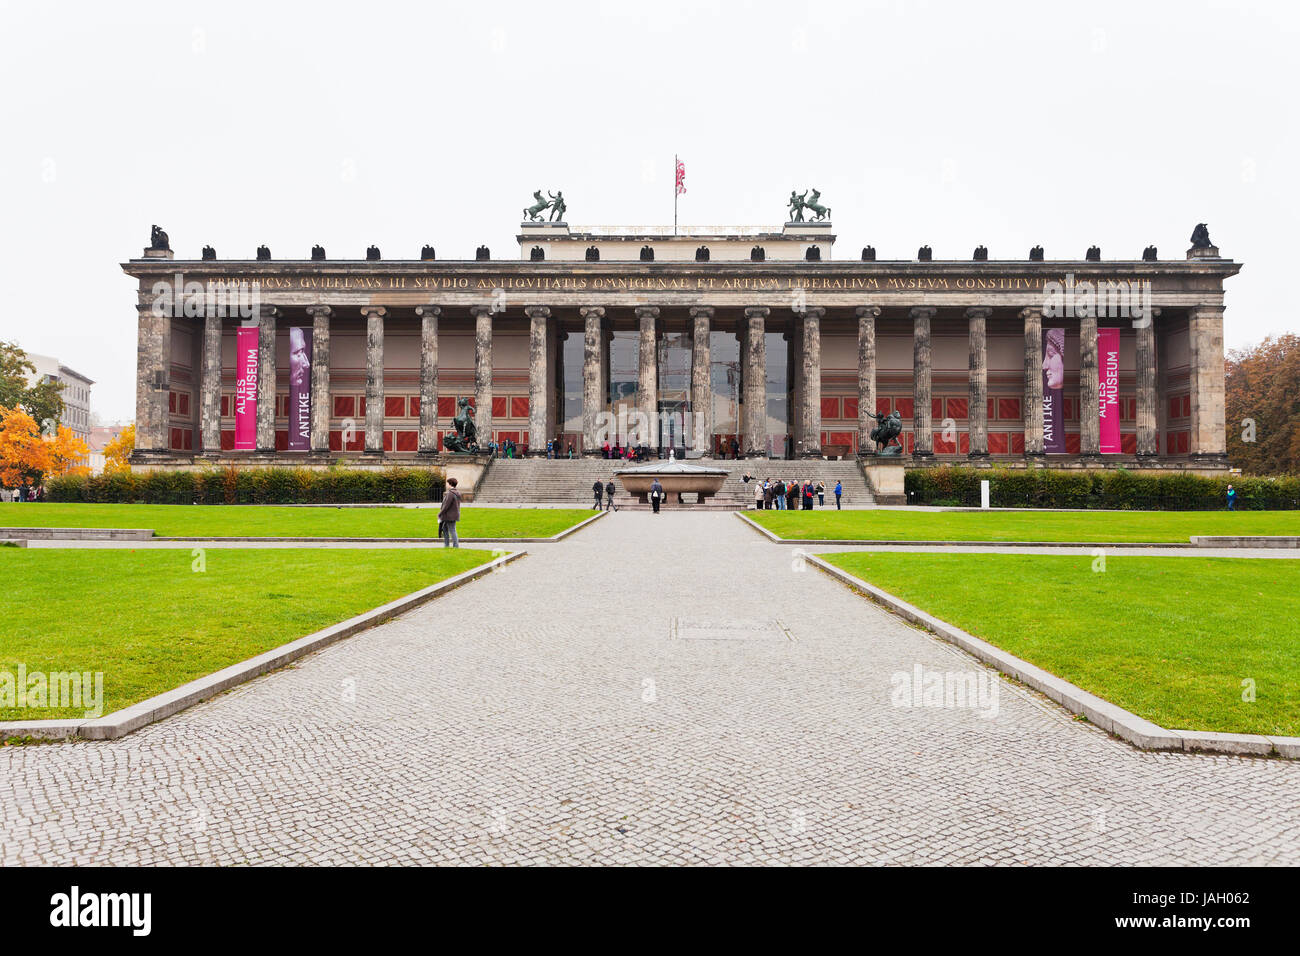 Berlino, Germania - 16 ottobre: vista frontale di Altes Museum (museo vecchio) di Berlino in Germania il 16 ottobre 2013. Il museo è stato costruito tra il 1823 e il 1830 dall'architetto Karl Friedrich Schinkel Foto Stock